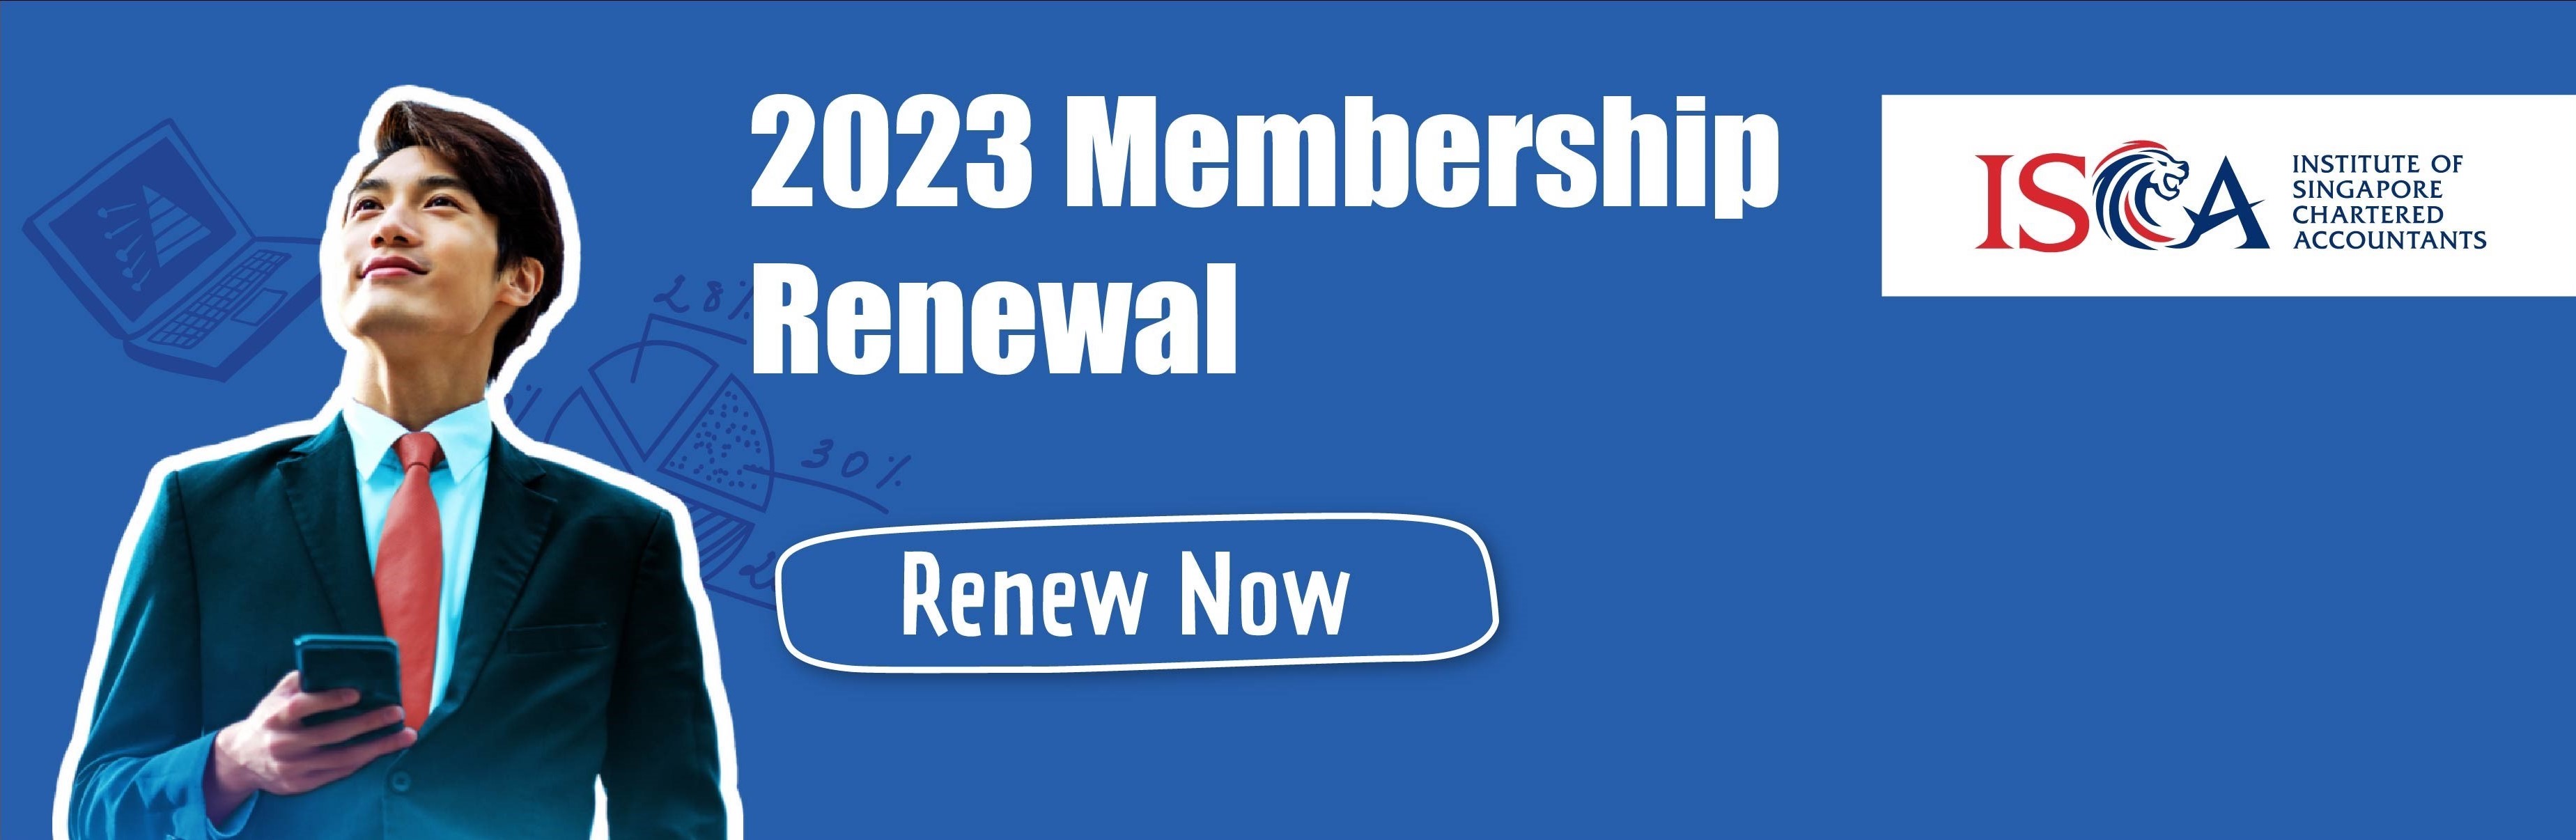 2023 Membership Renewal - Web Banner